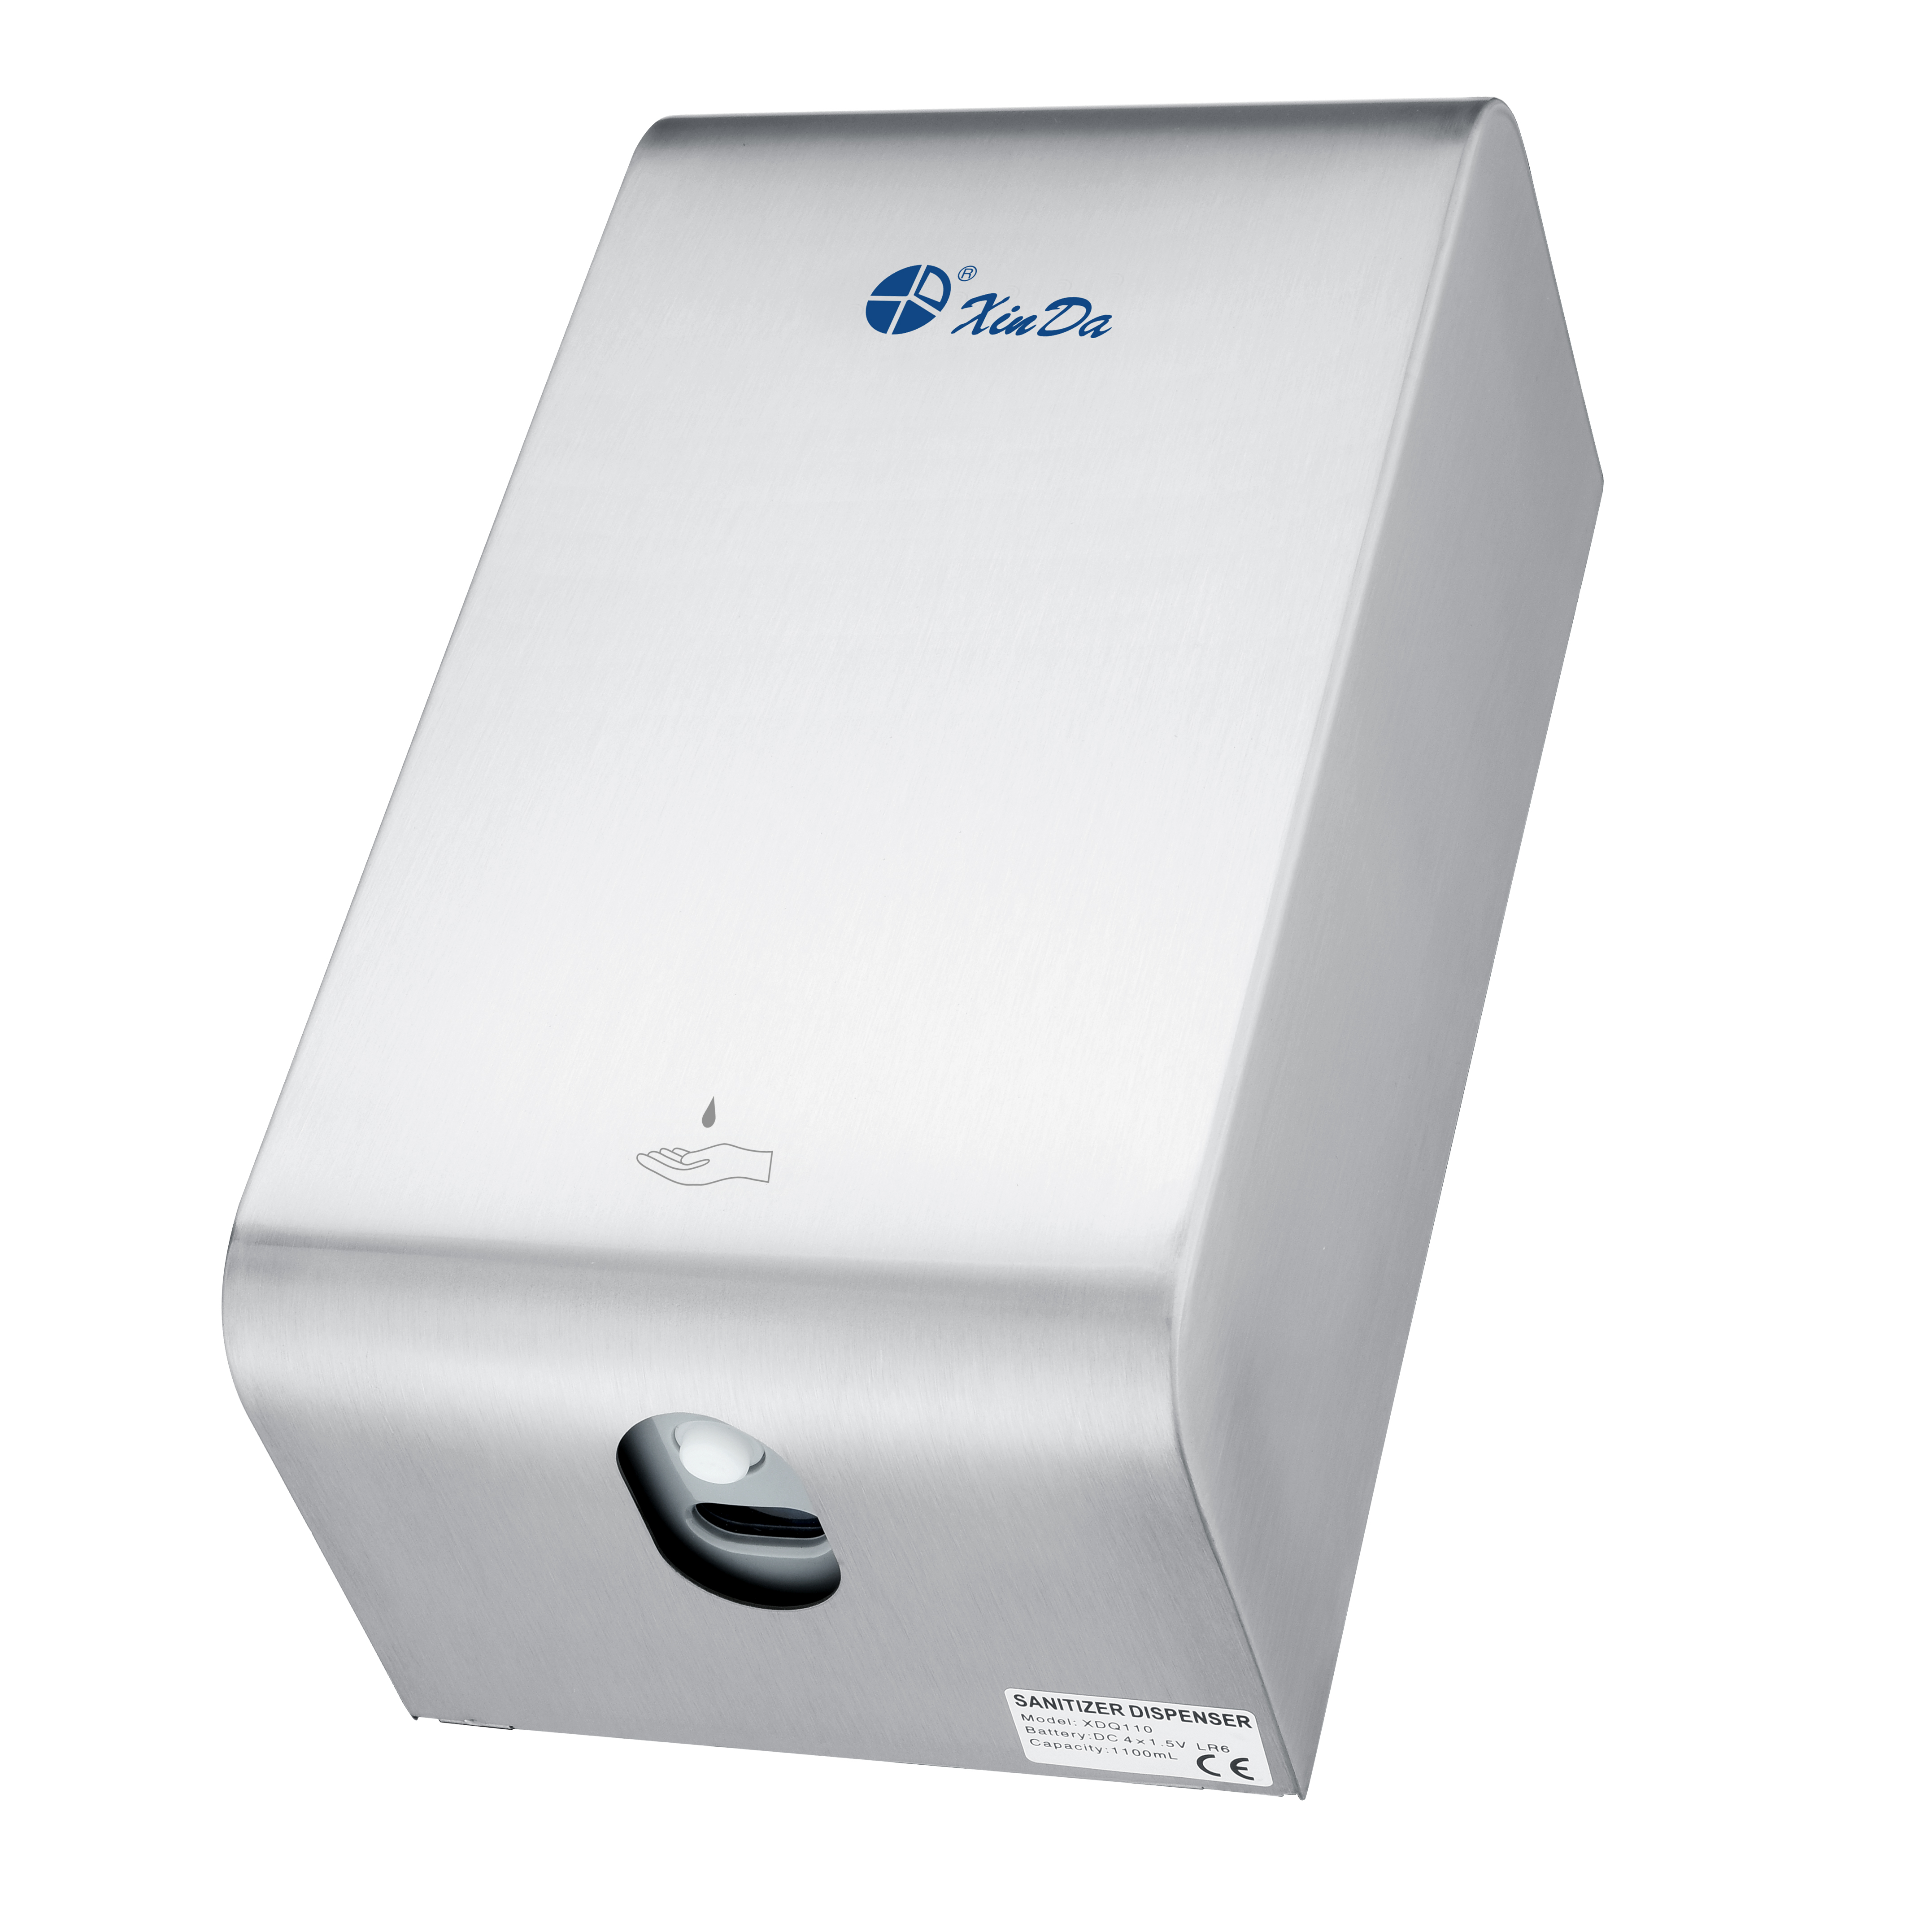 ZYQ110K Auto Soap Dispenser